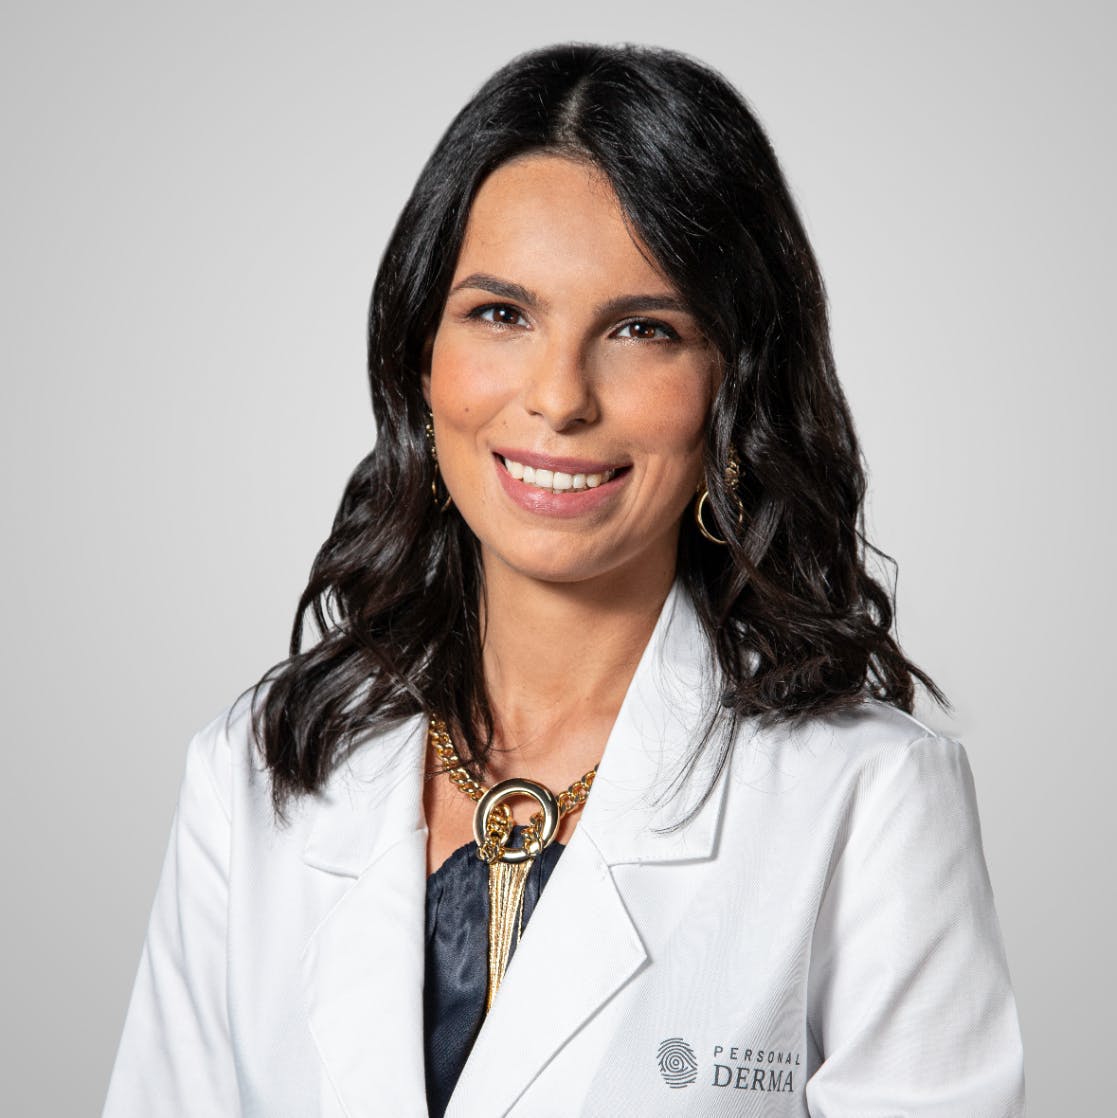 Dr.ª Catarina Pinheiro Medicina Geral e Familiar - Medicina Estética e Anti Aging - Dermatologia Estética